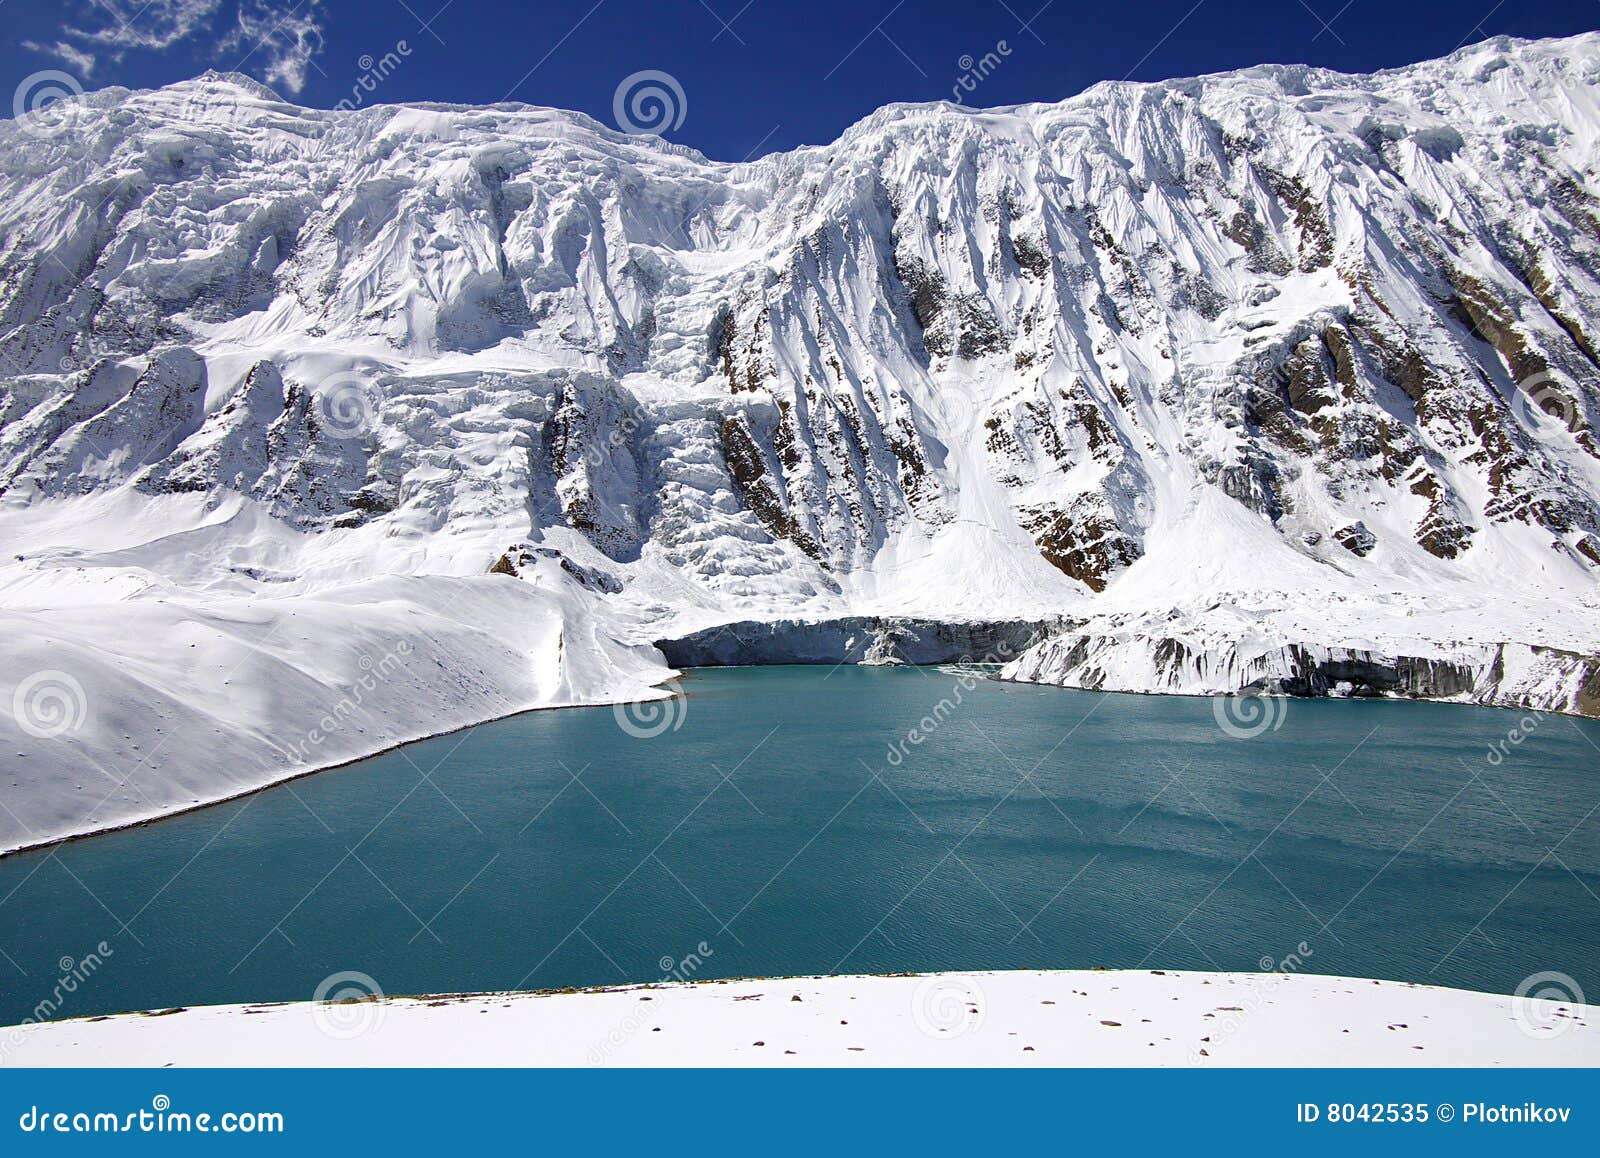 high-mountainous lake tilicho